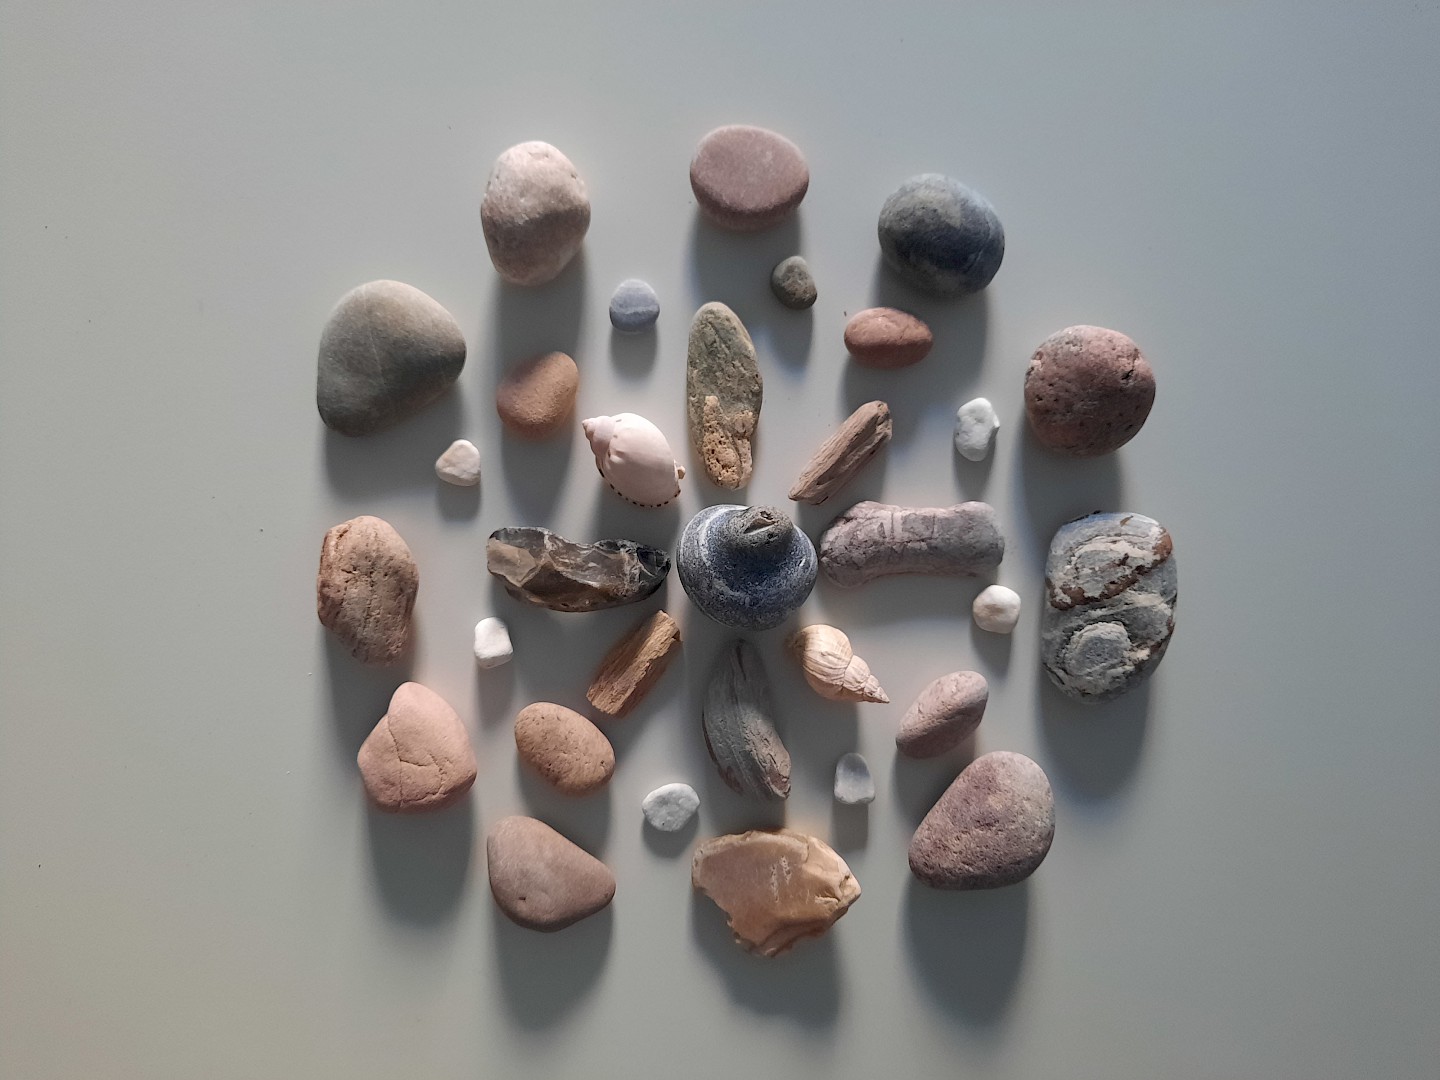 Mandala made of stones and shells.
Rosine Lambin, 2022